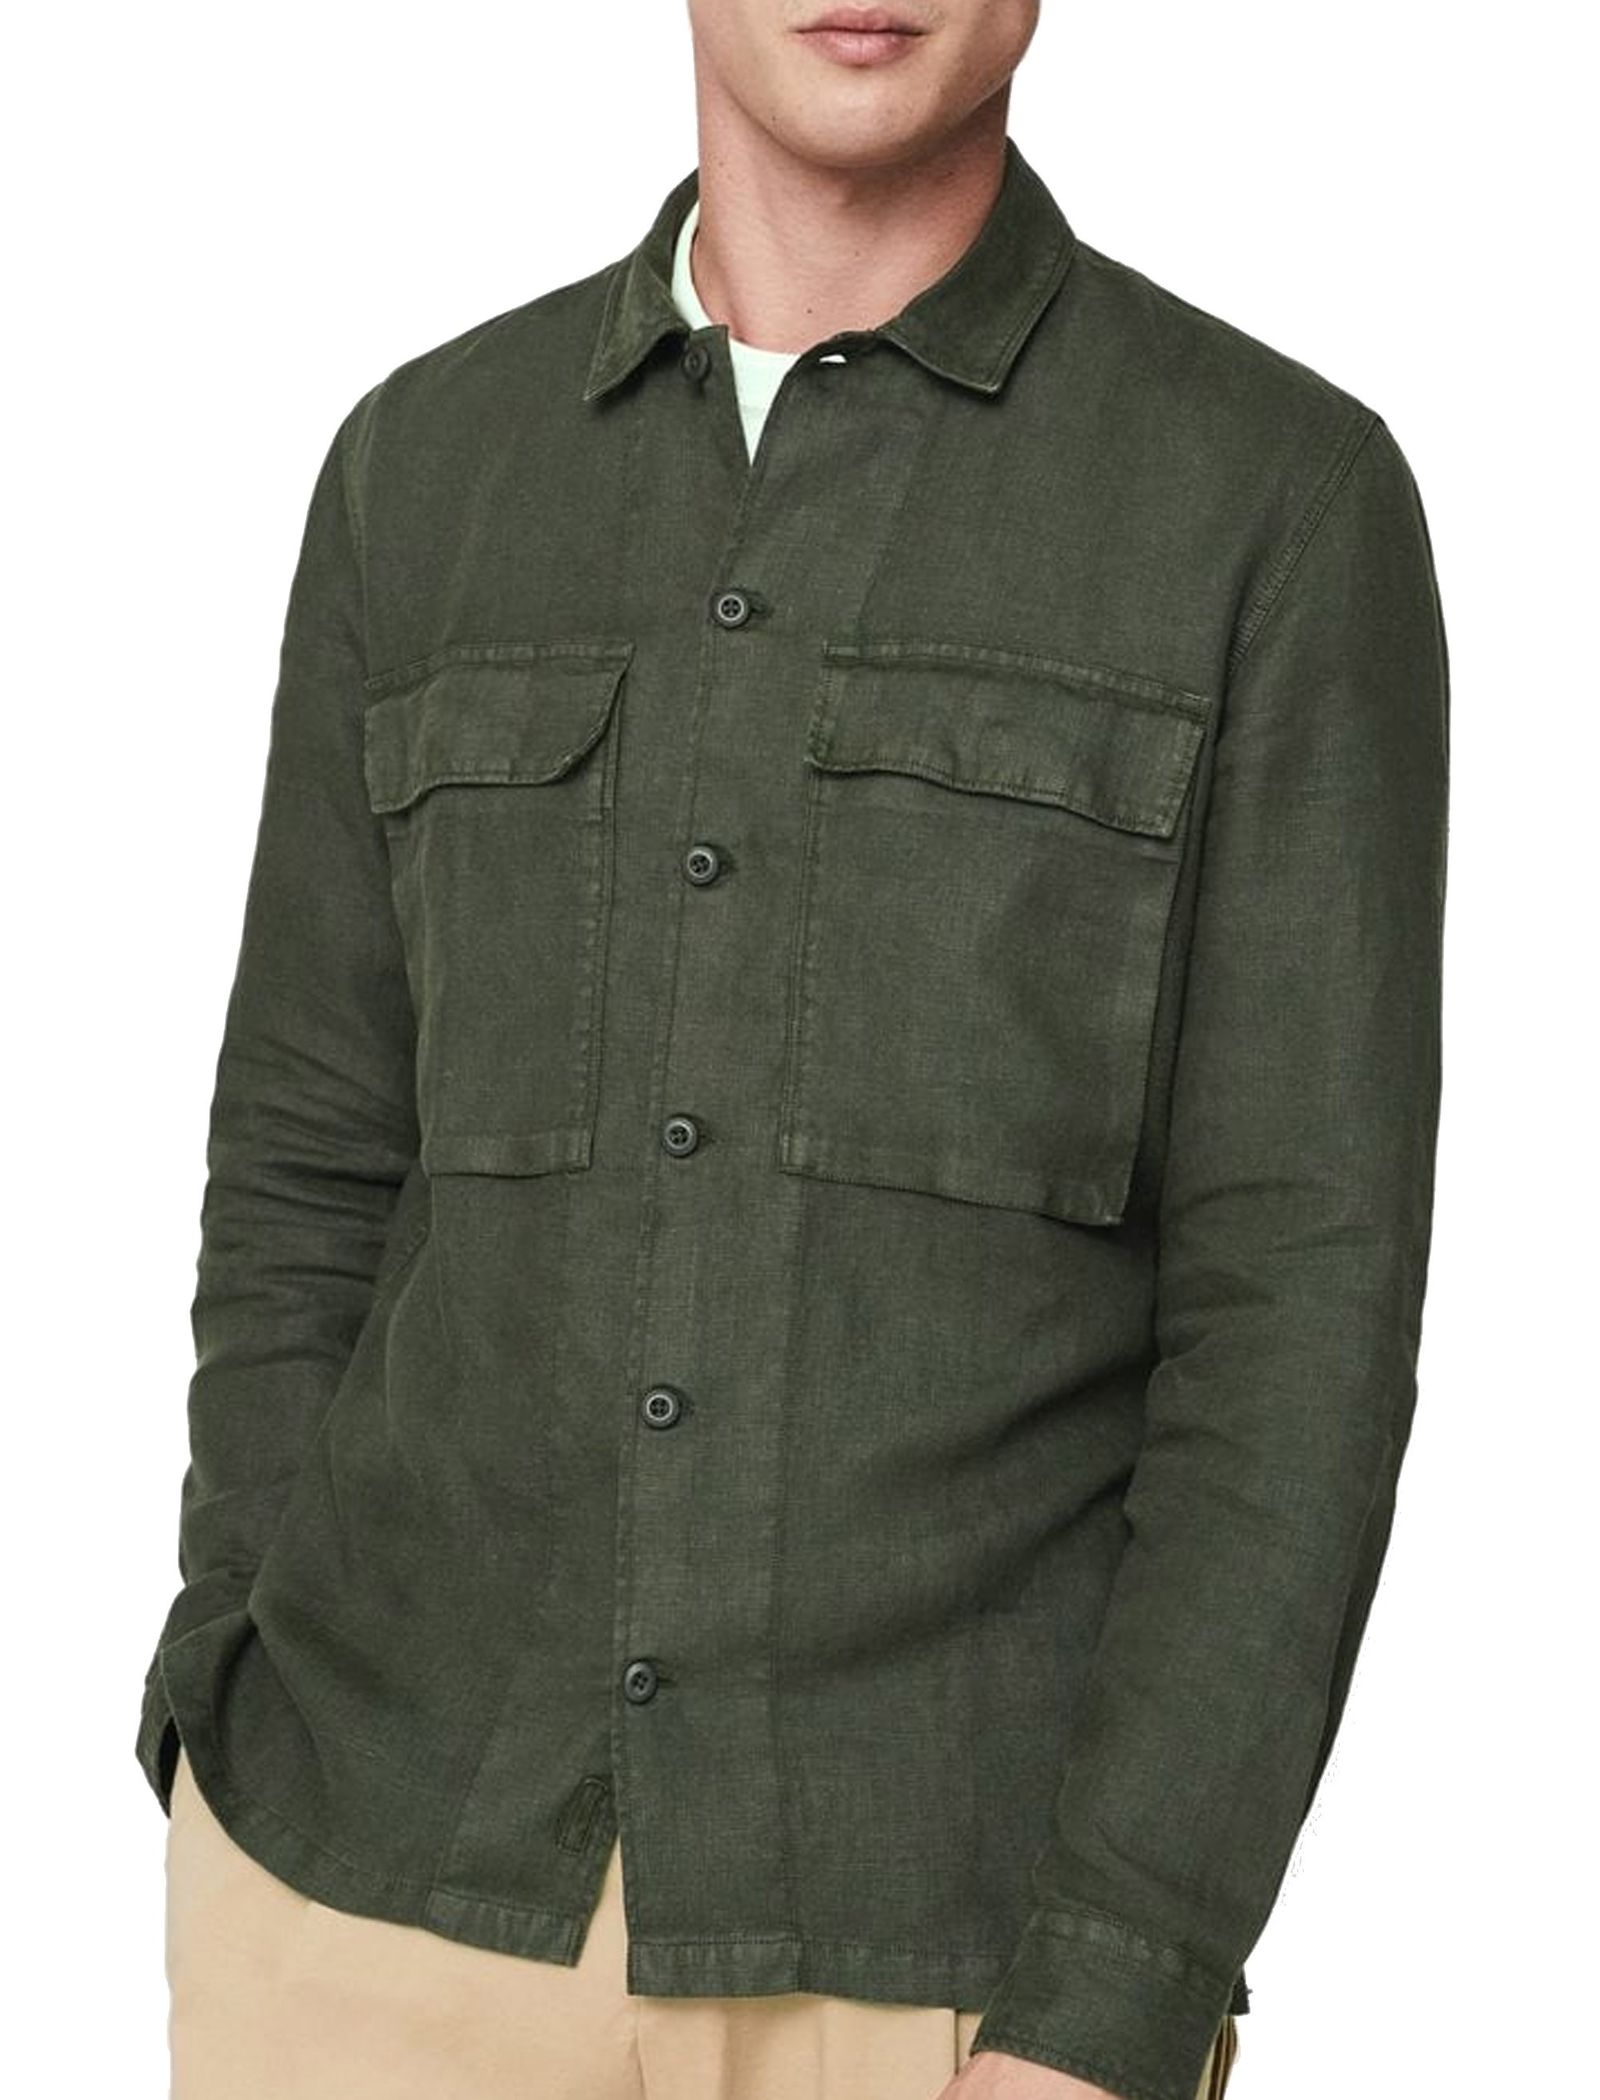 پیراهن آستین بلند مردانه - مانگو - سبز - 3